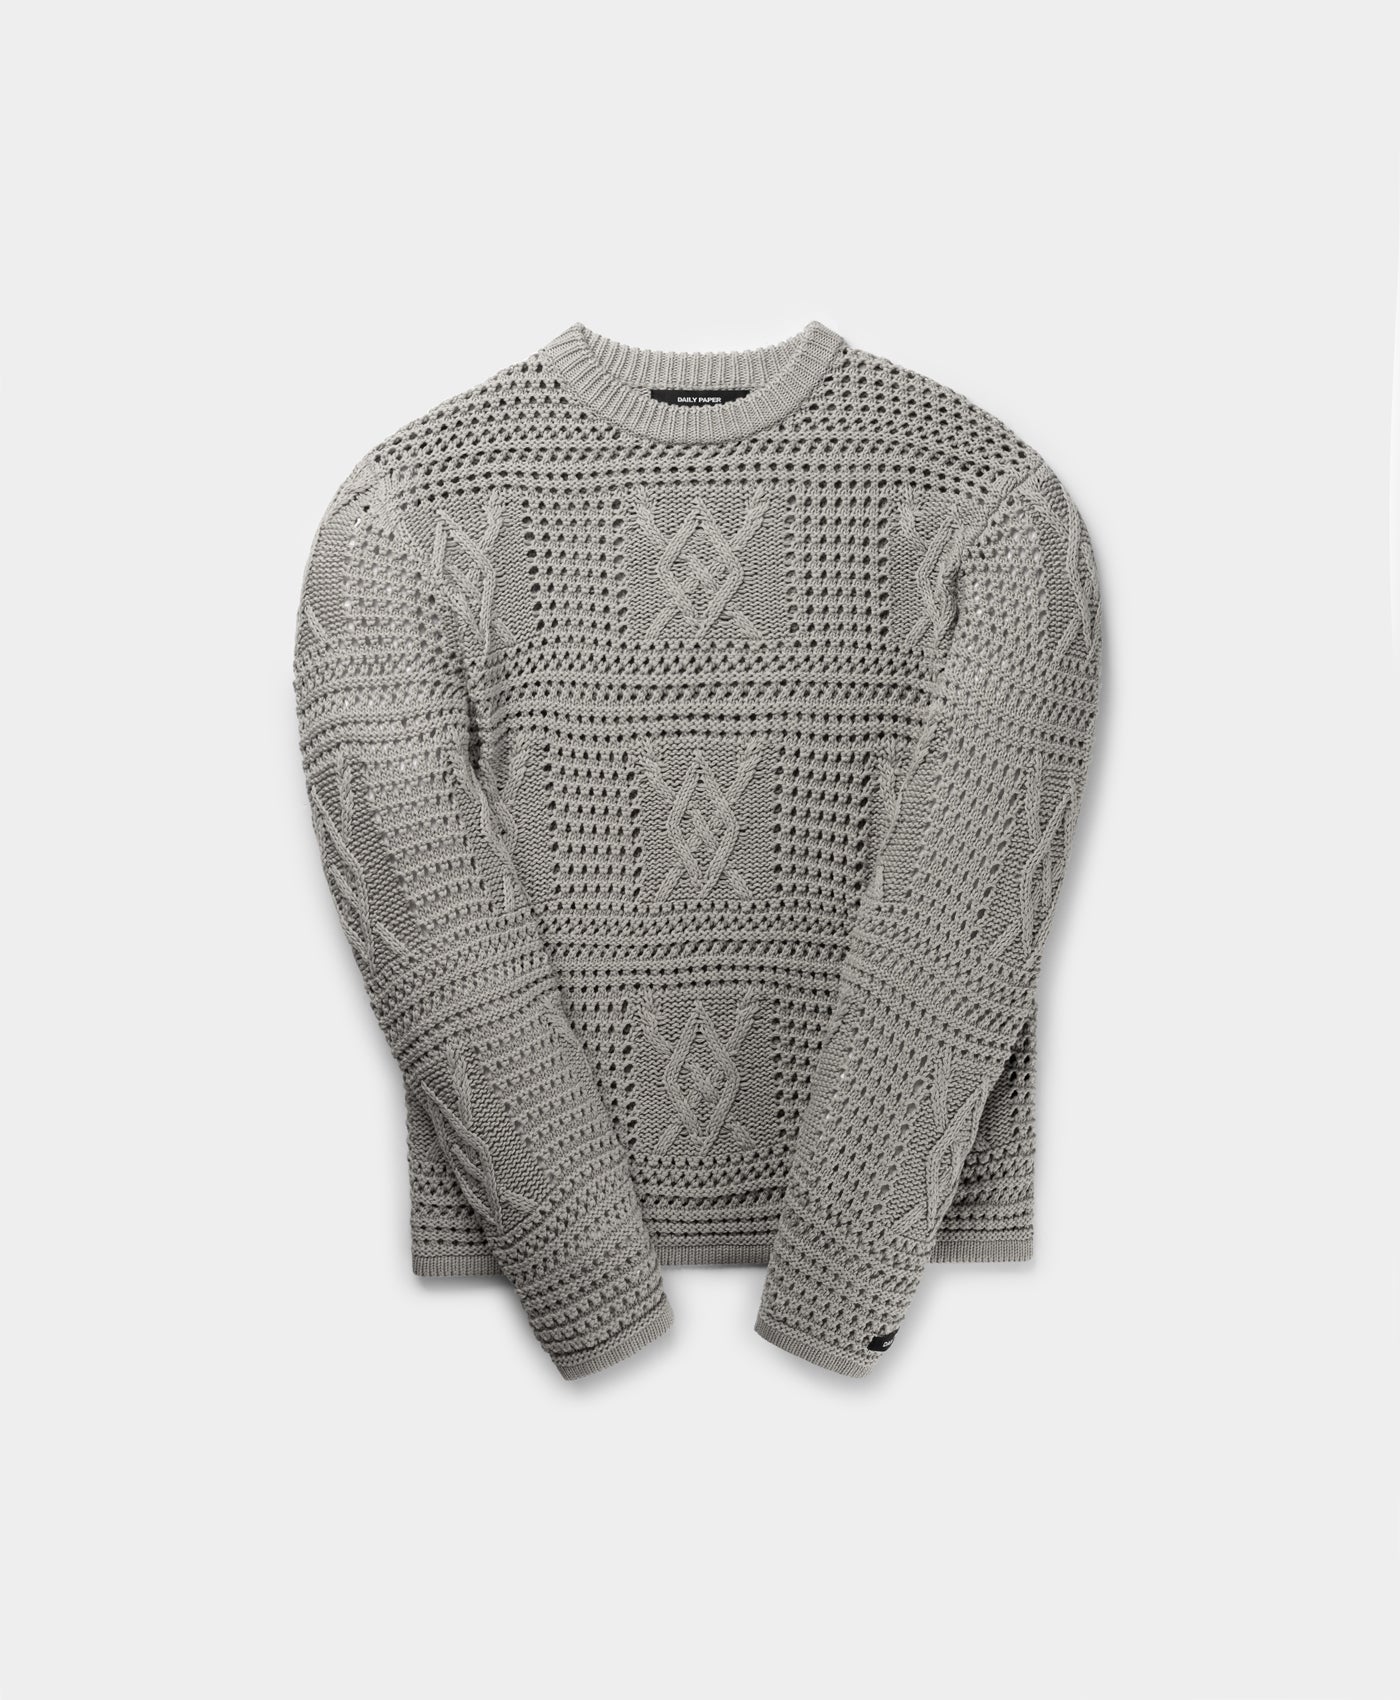 DP - Moonstruck Grey Zuberi Crochet LS - Packshot - Front